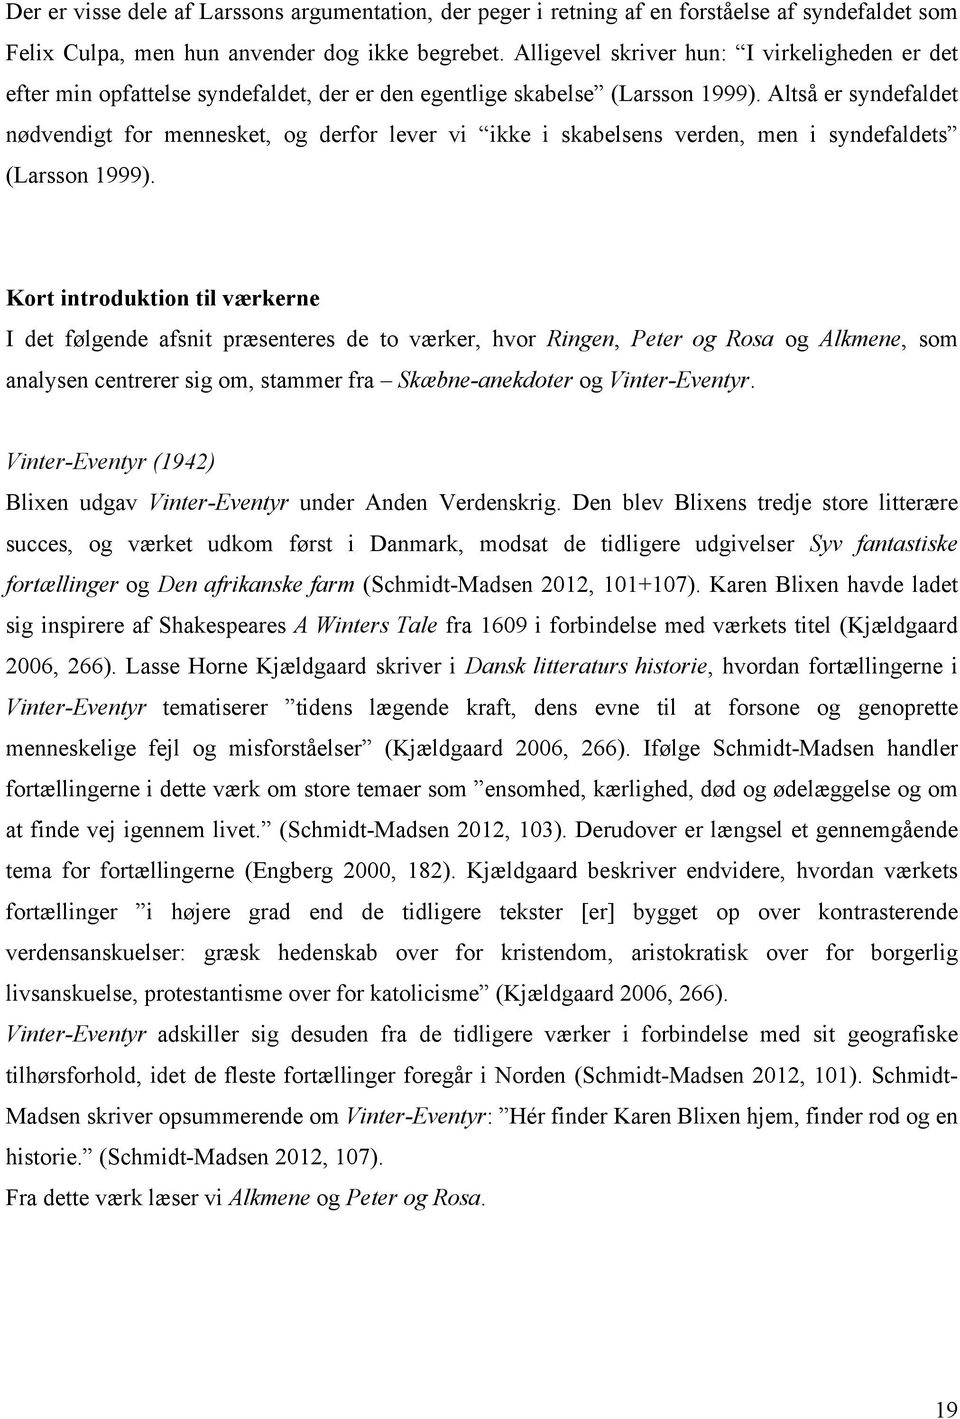 Blixen & syndefaldet - PDF Free Download